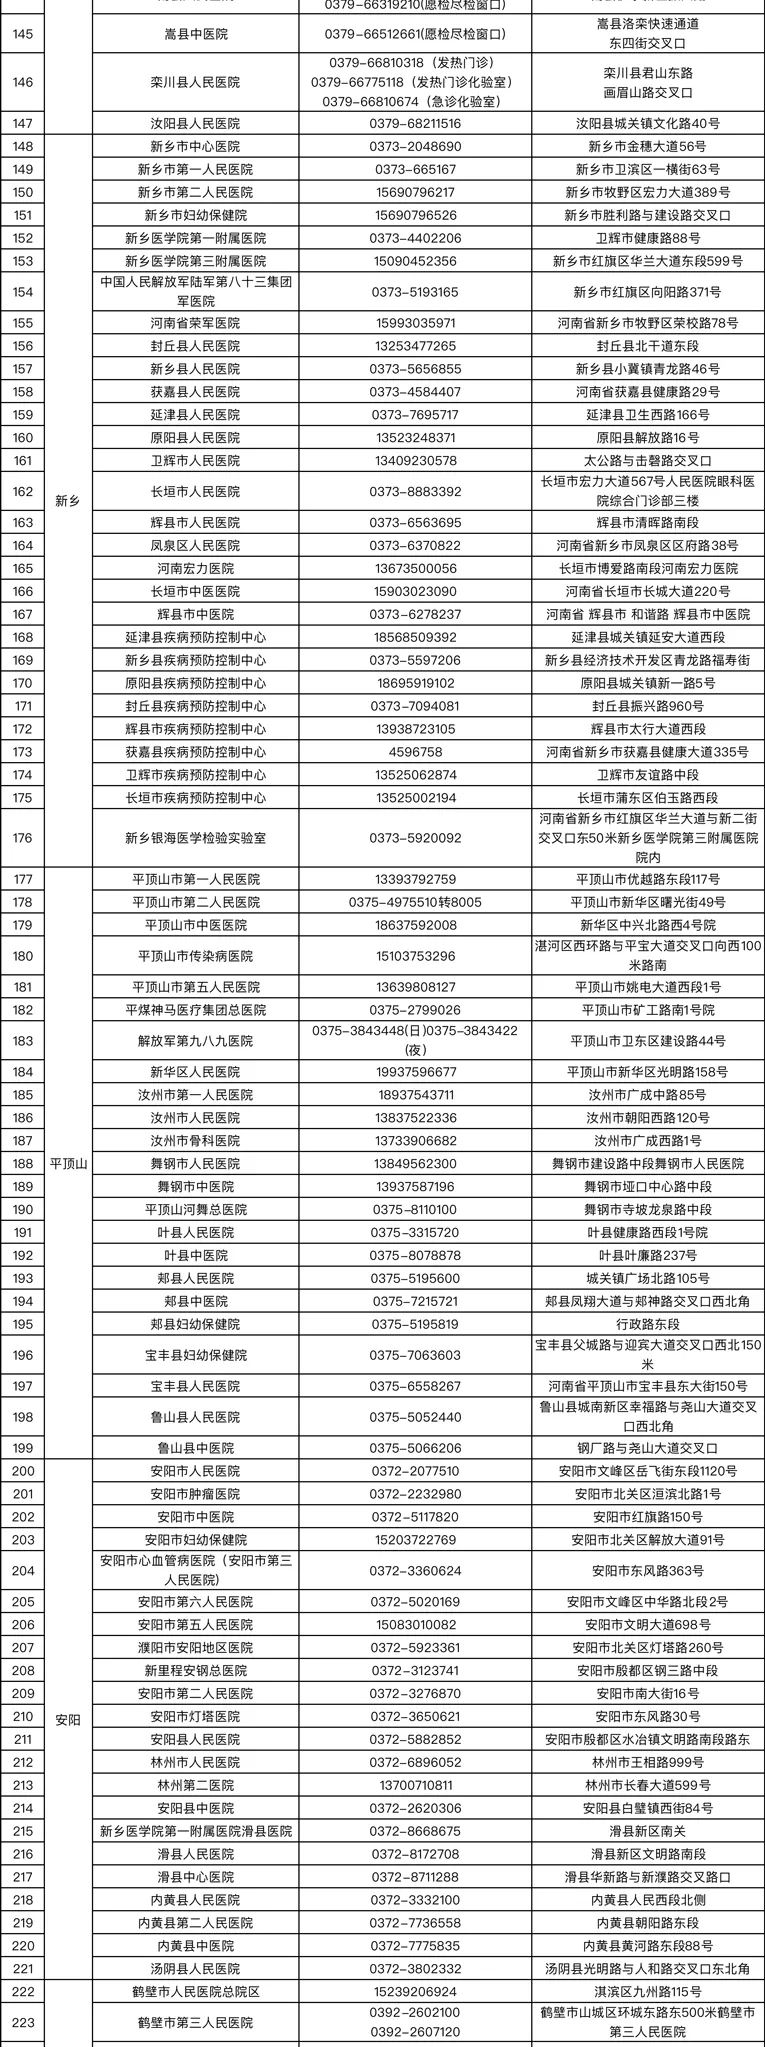 河南省核酸检测机构地图上线 最快6小时内可查报告结果